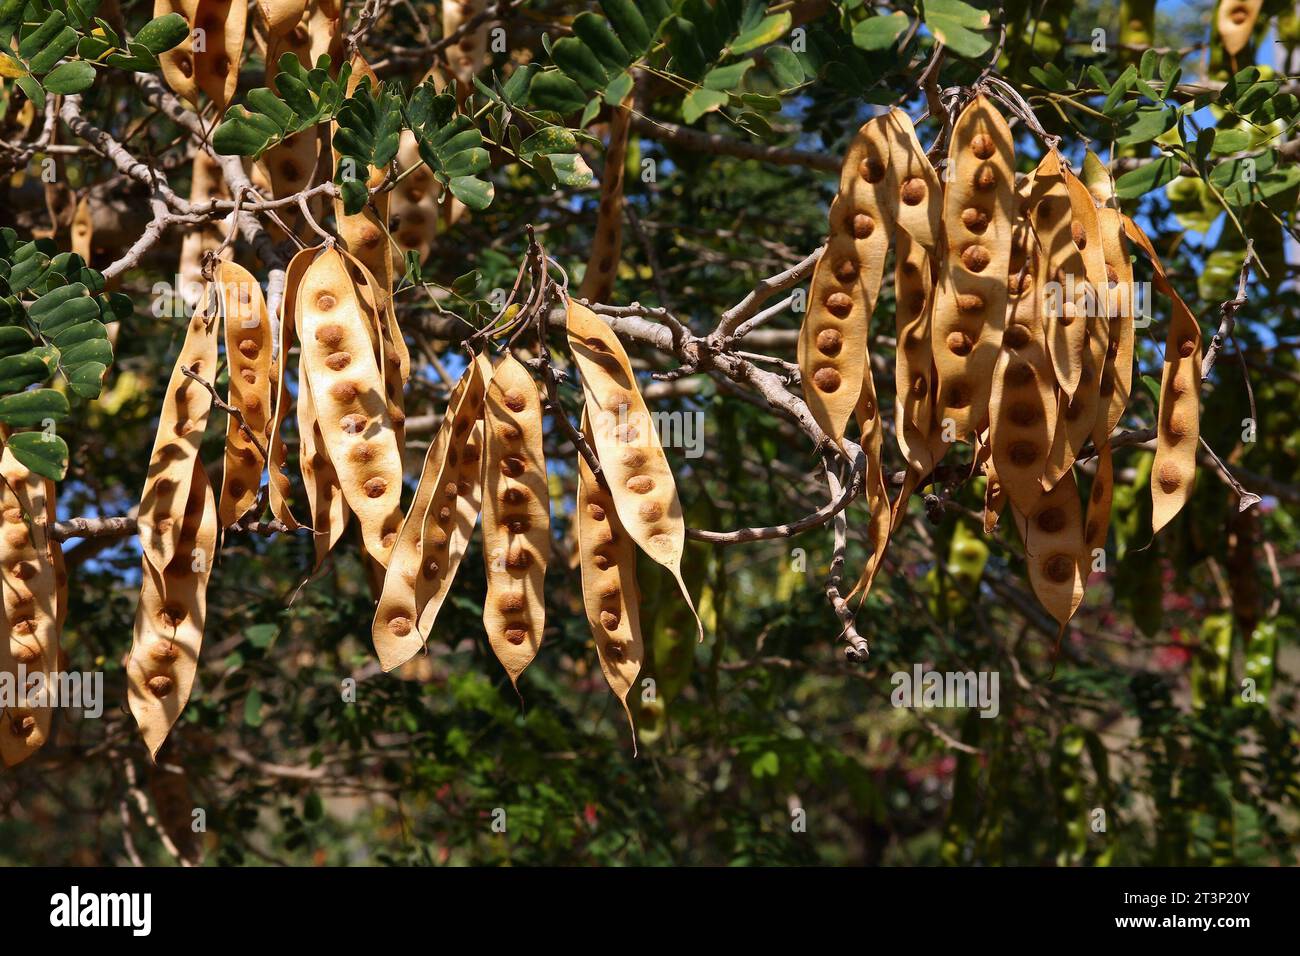 Indischer siris-Baum, auch bekannt als Broome raintree (Albizia lebbeck). Tropische Baumarten in der Familie Fabaceae in Kuba. Samenkörner und Blätter. Stockfoto